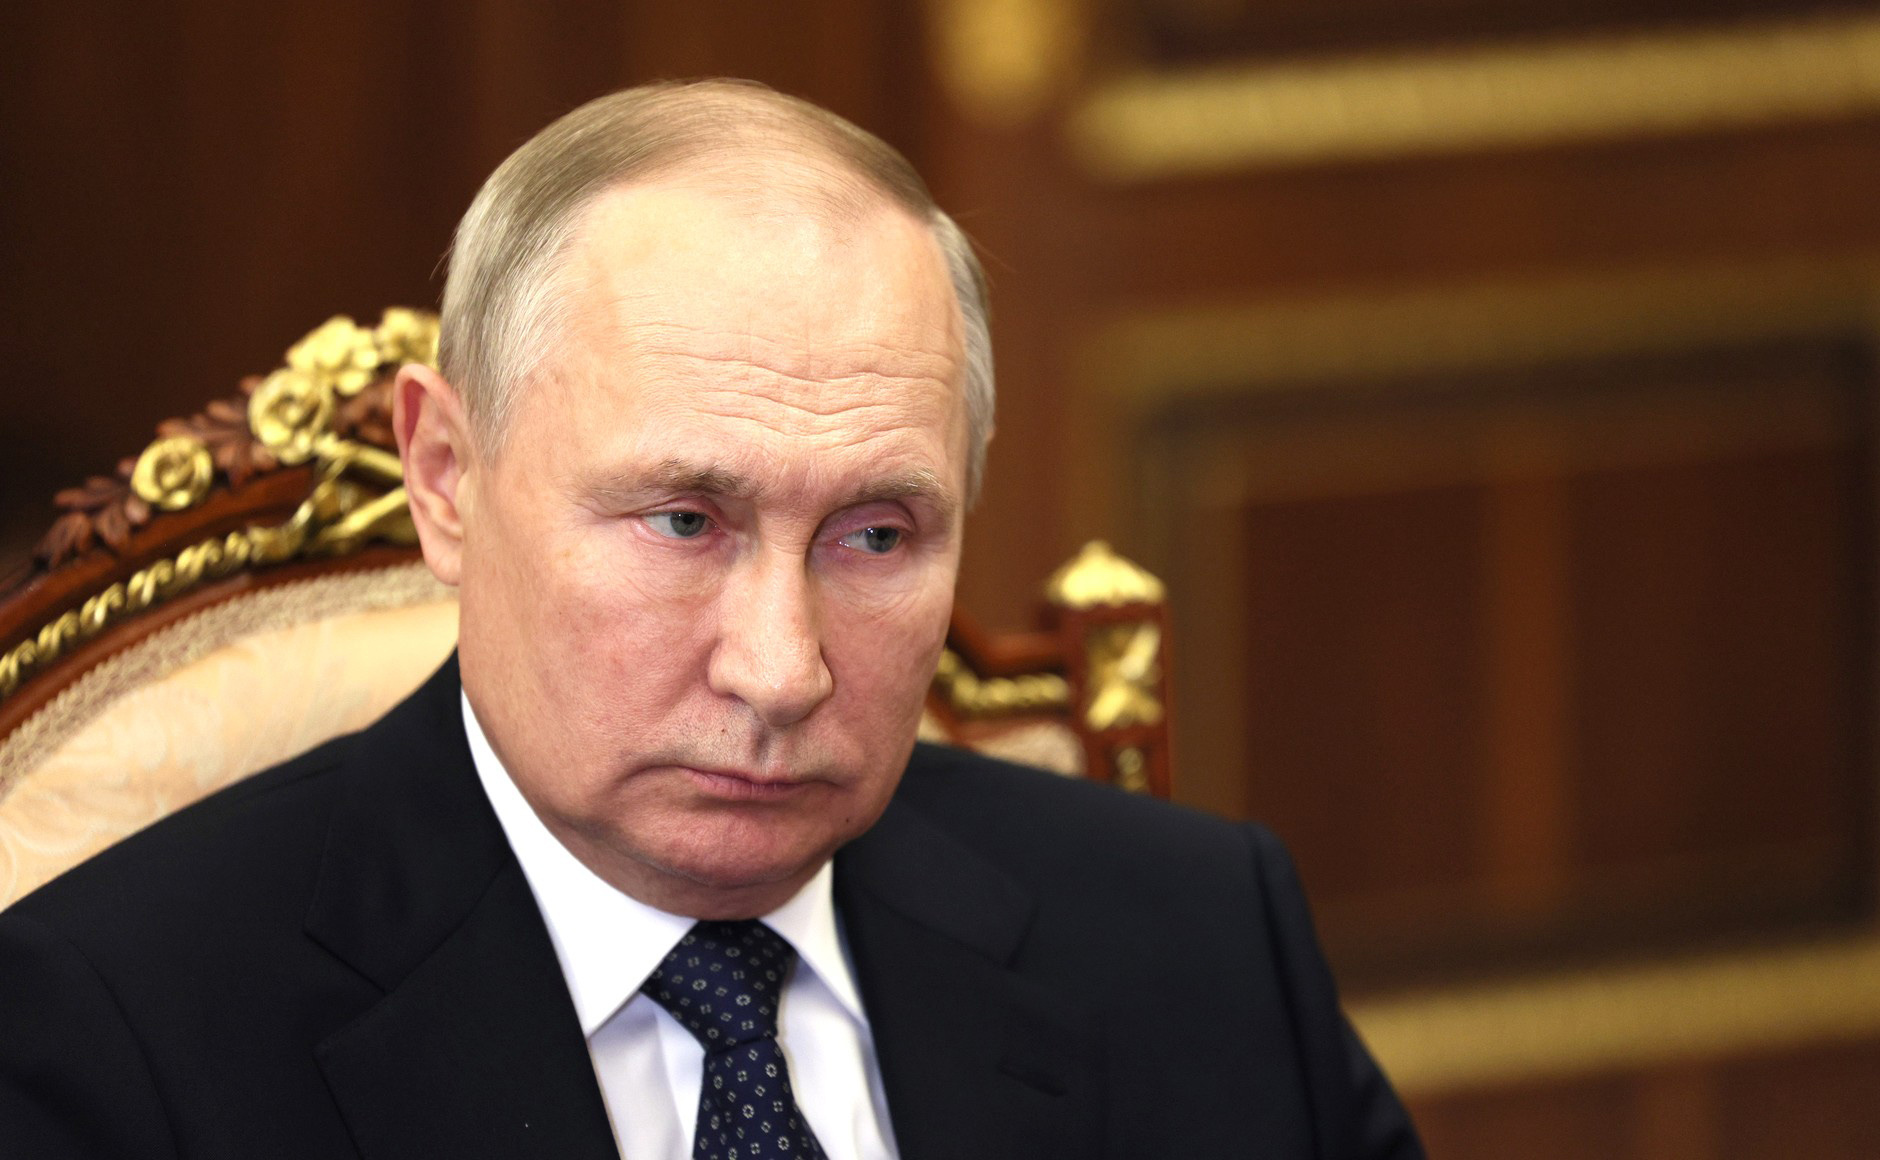 Russlands Präsident Wladimir Putin blickt versonnen an der Kamera vorbei.